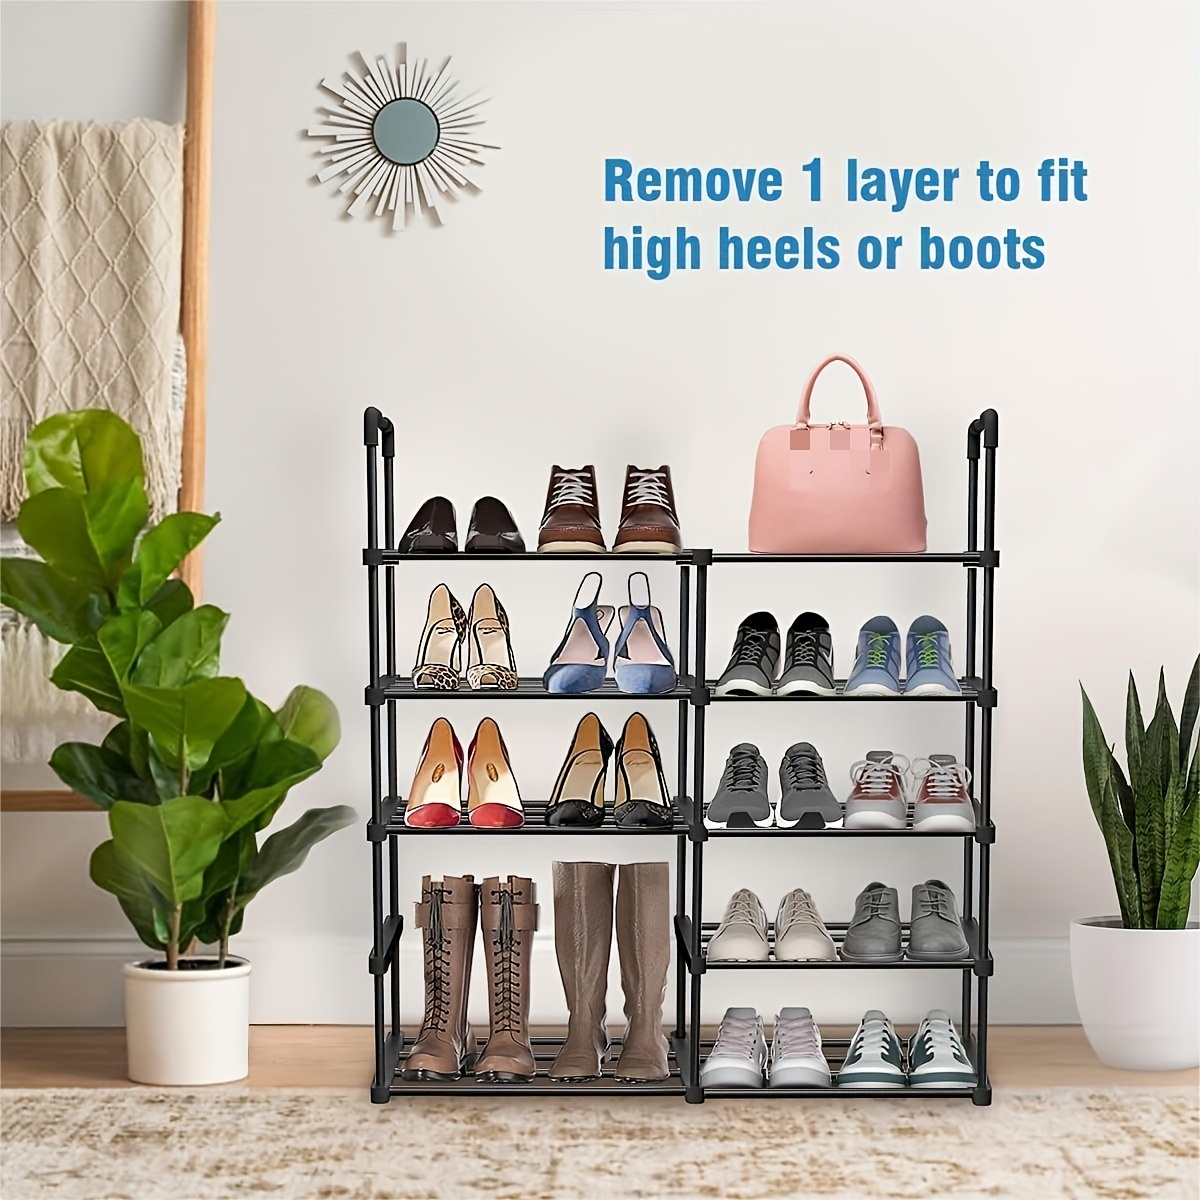 10 Tiers Shoe Rack, Large Capacity Shoe Shelf, Tall Shoe Organizer